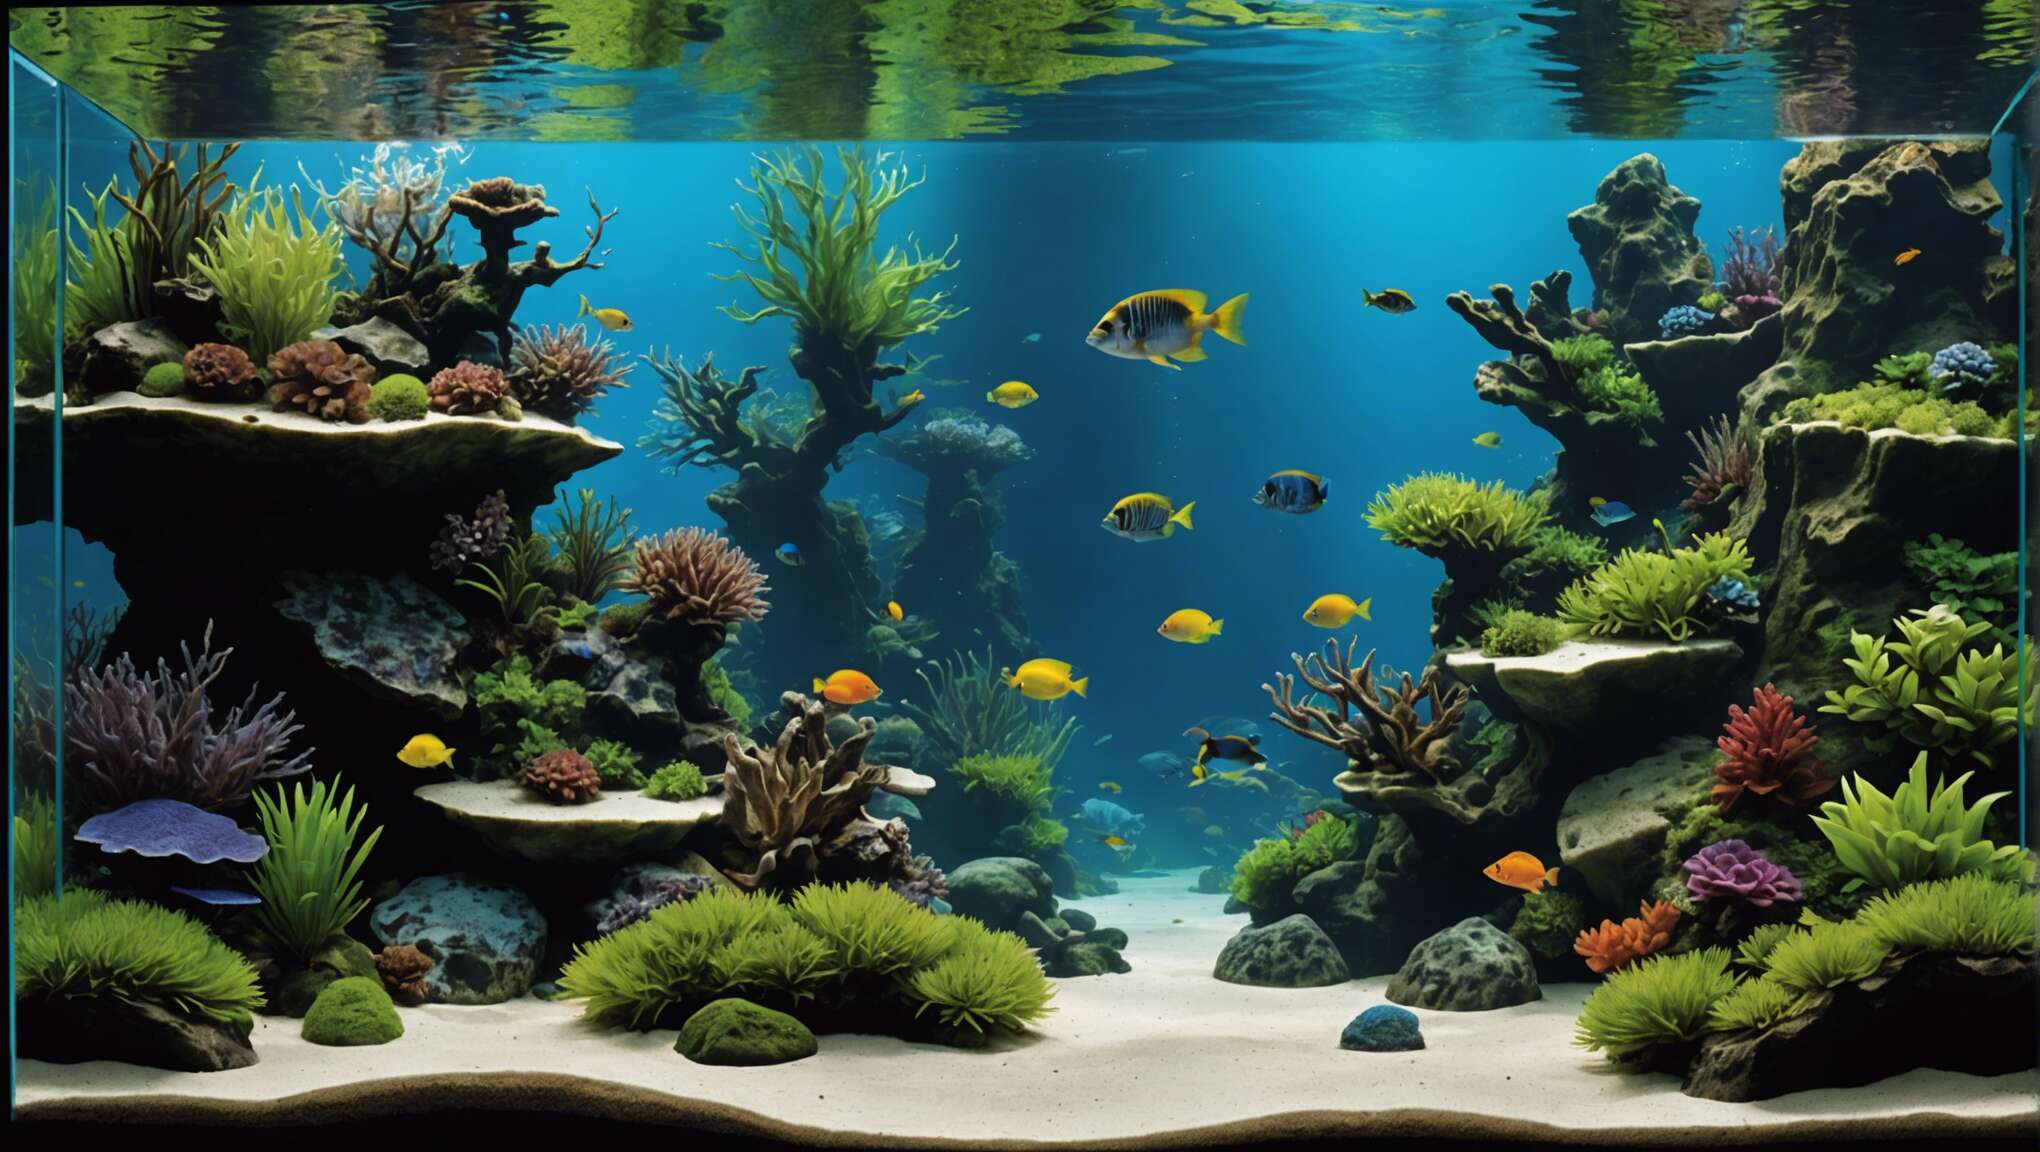 Principes fondamentaux de l'aquascaping : créer un univers aquatique